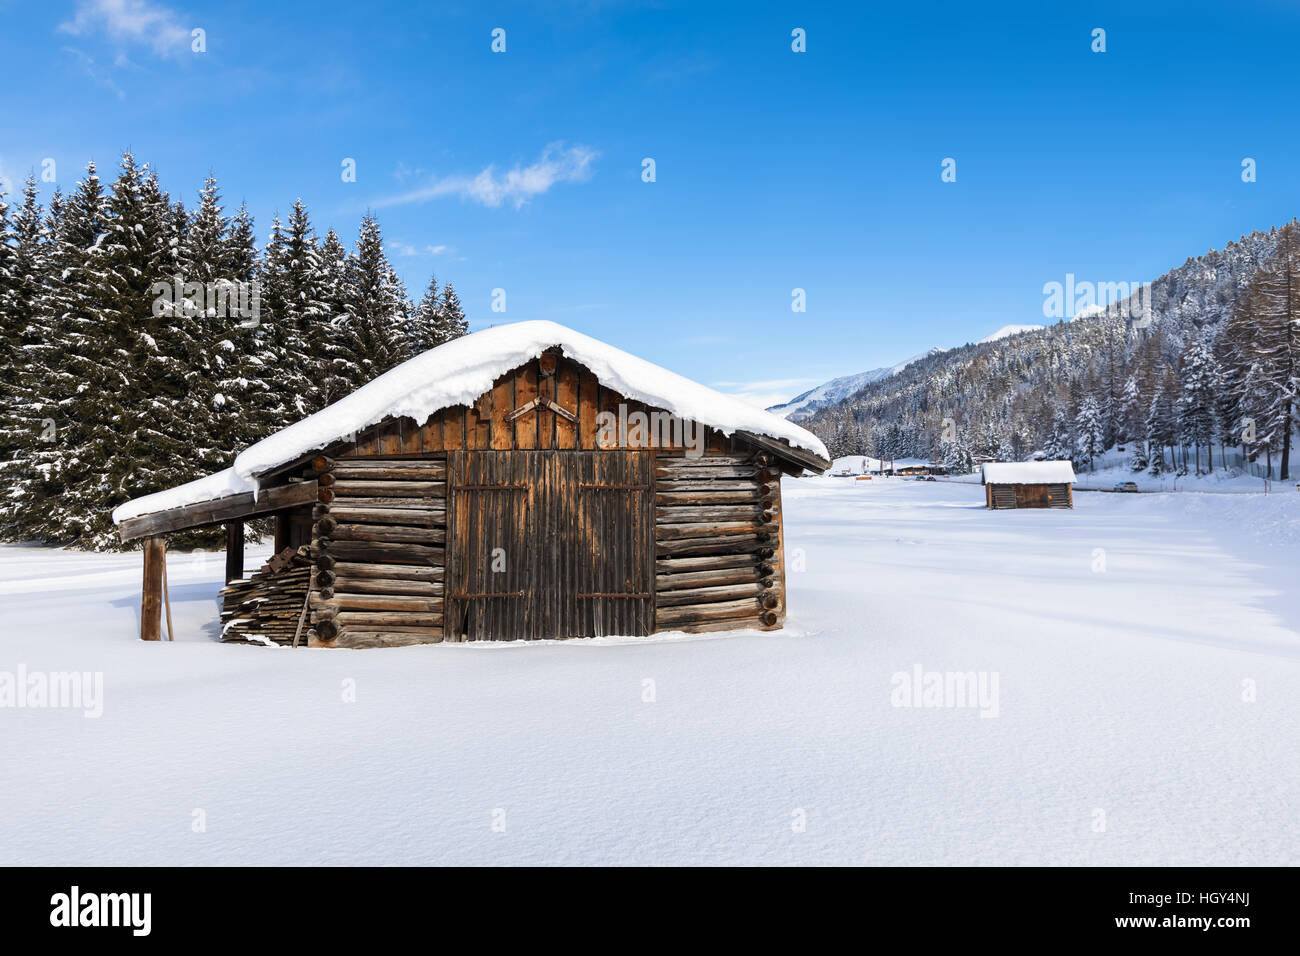 Chalet de madera cubierto de nieve en un paisaje invernal blanco Foto de stock